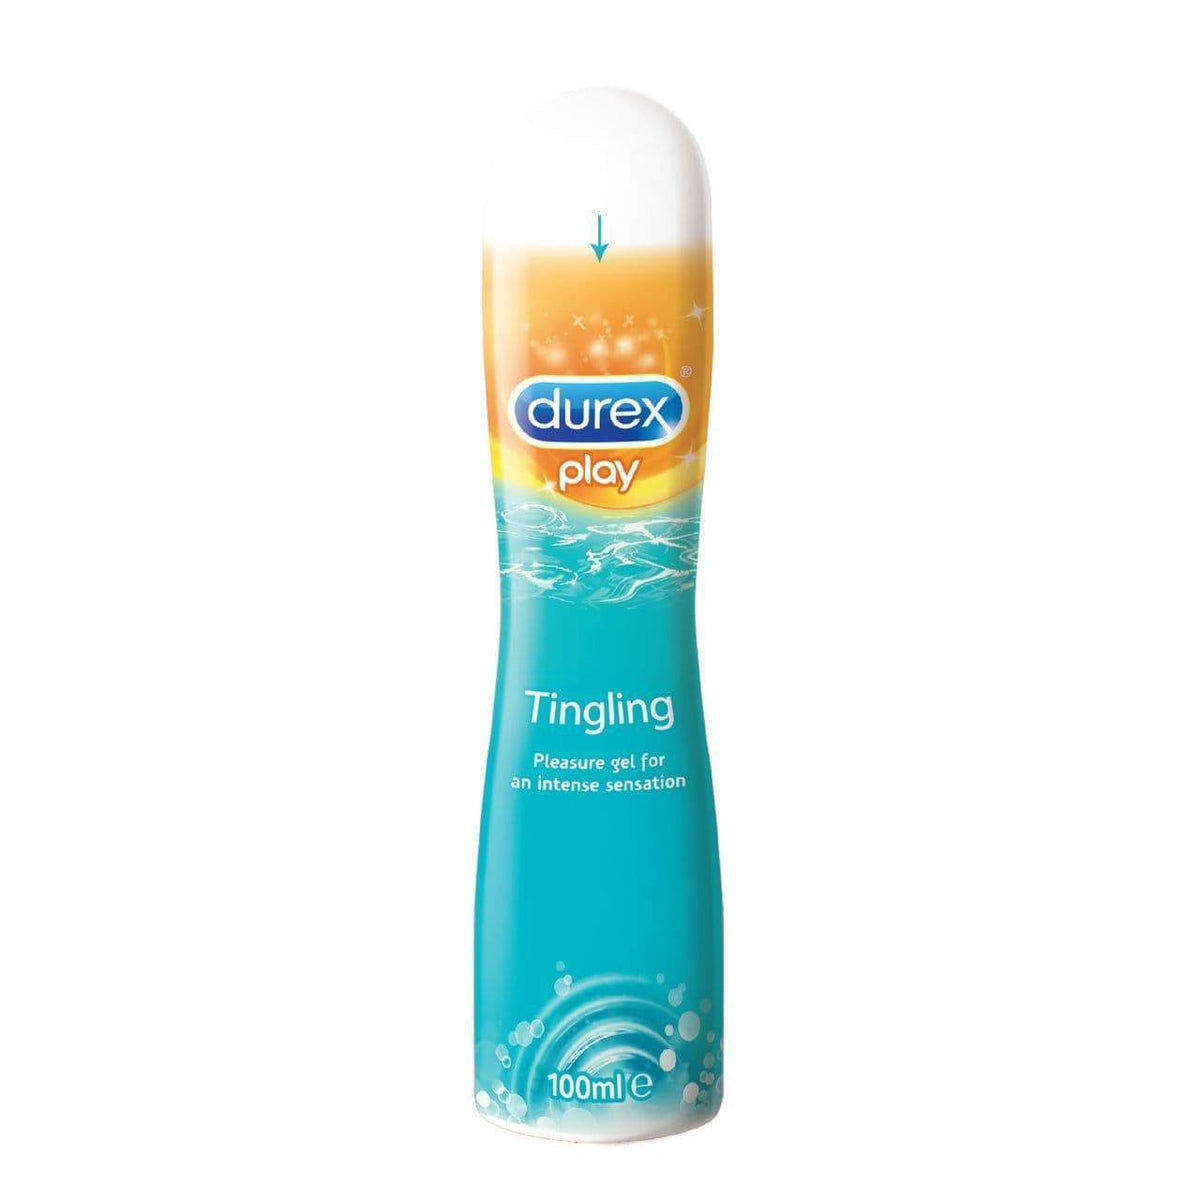 Durex - Play Tingling Pleasure Gel 100 ml (Lube) -  Lube (Water Based)  Durio.sg